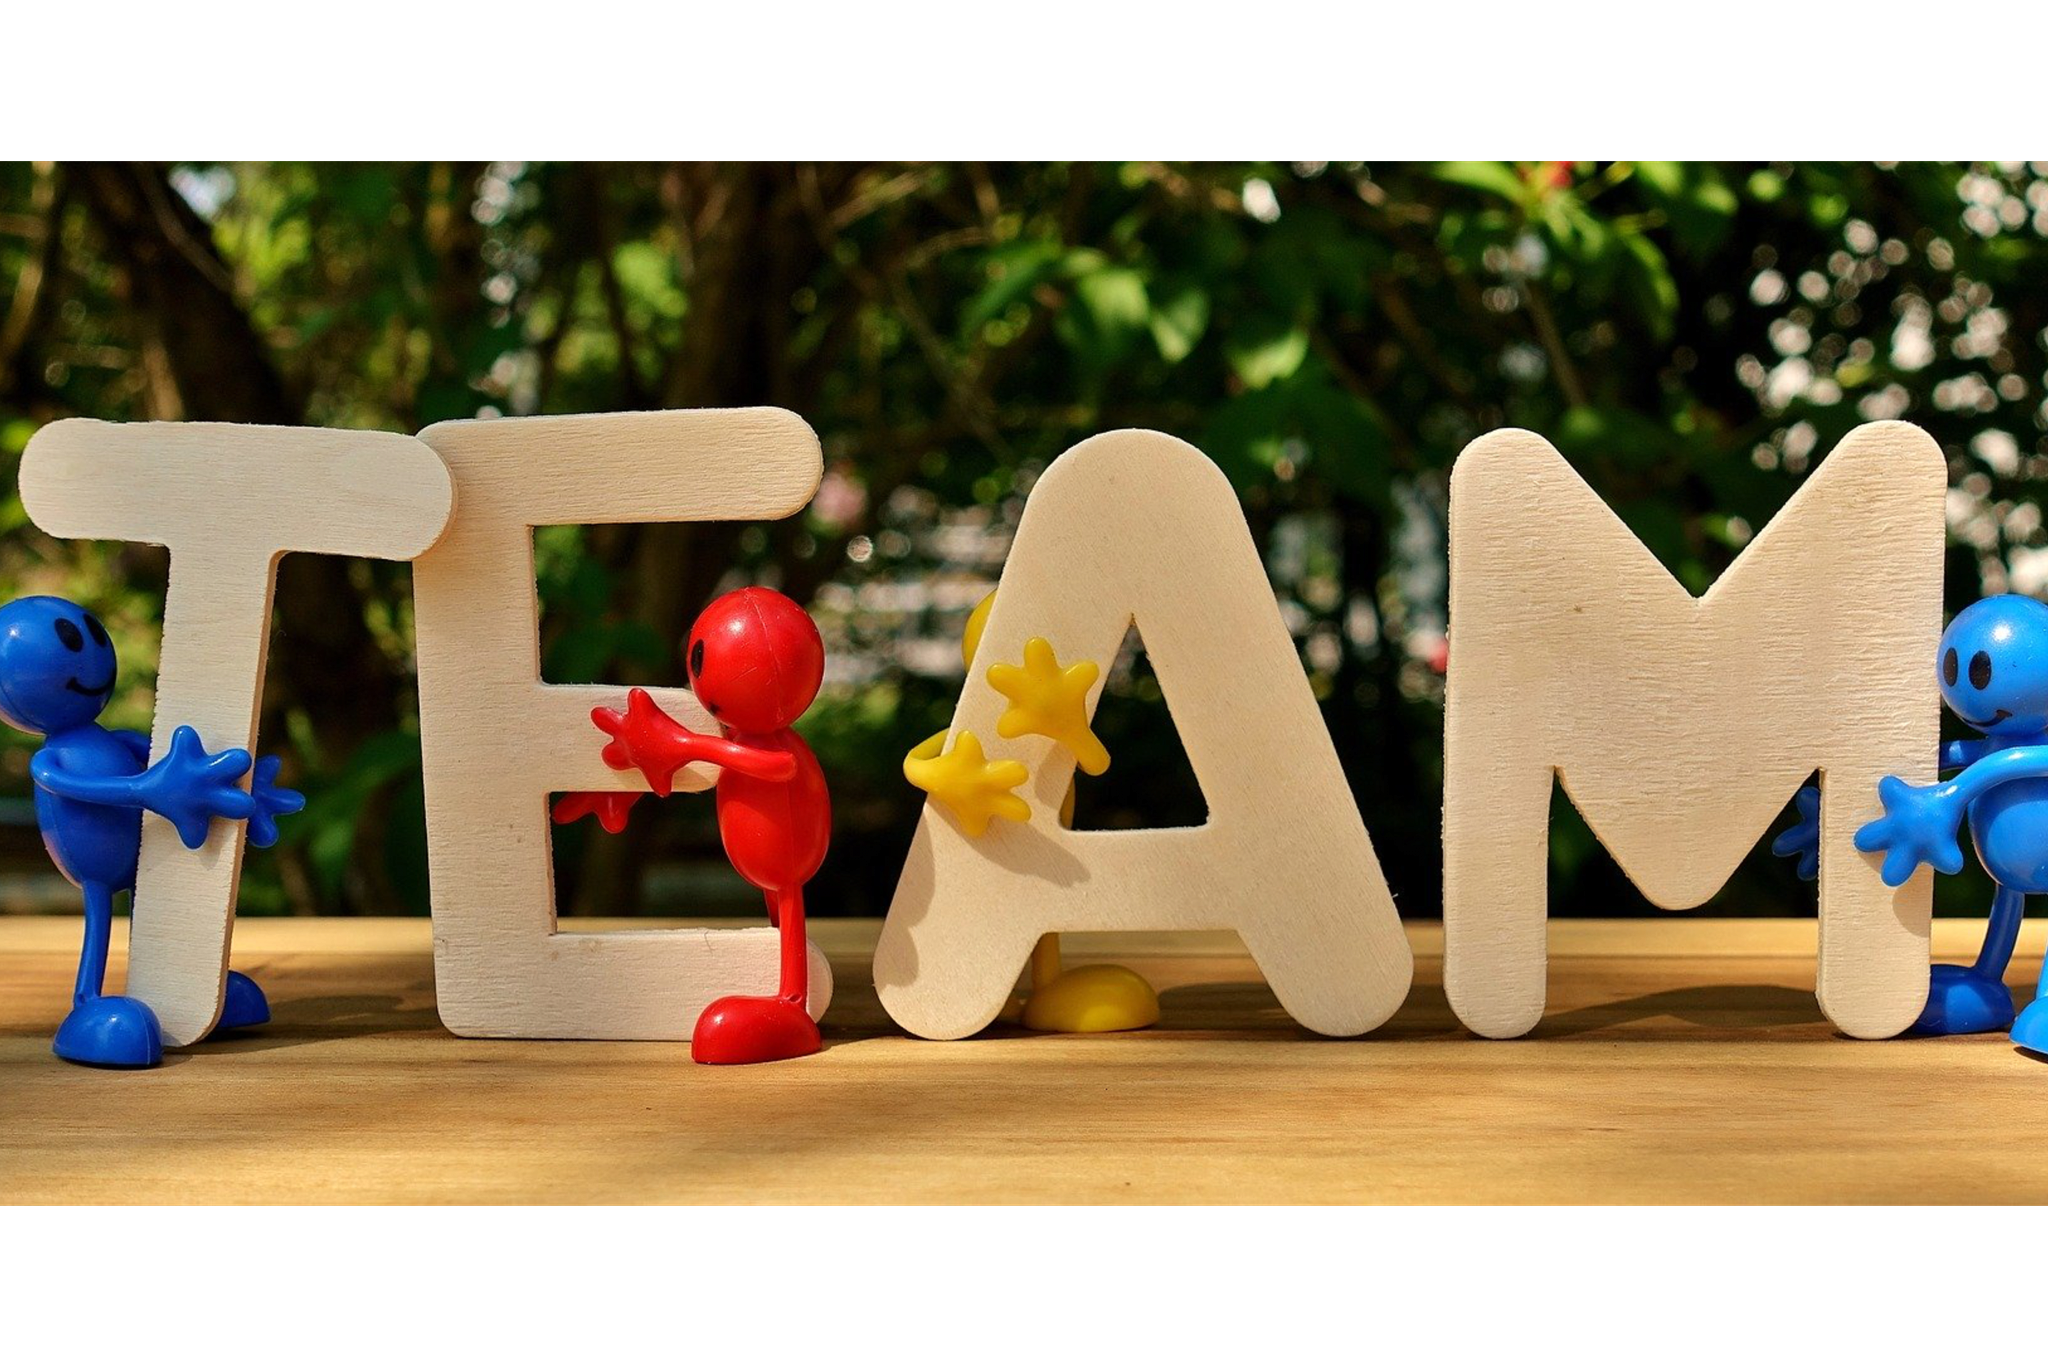 Foto: Schriftzug "TEAM" aus Holzbuchstaben, gehalten von bunten Plastikmännchen, Bildnachweis: Alexas_Fotos auf pixabay, https://pixabay.com/de/photos/team-teamwork-gemeinsam-strategie-3393037/